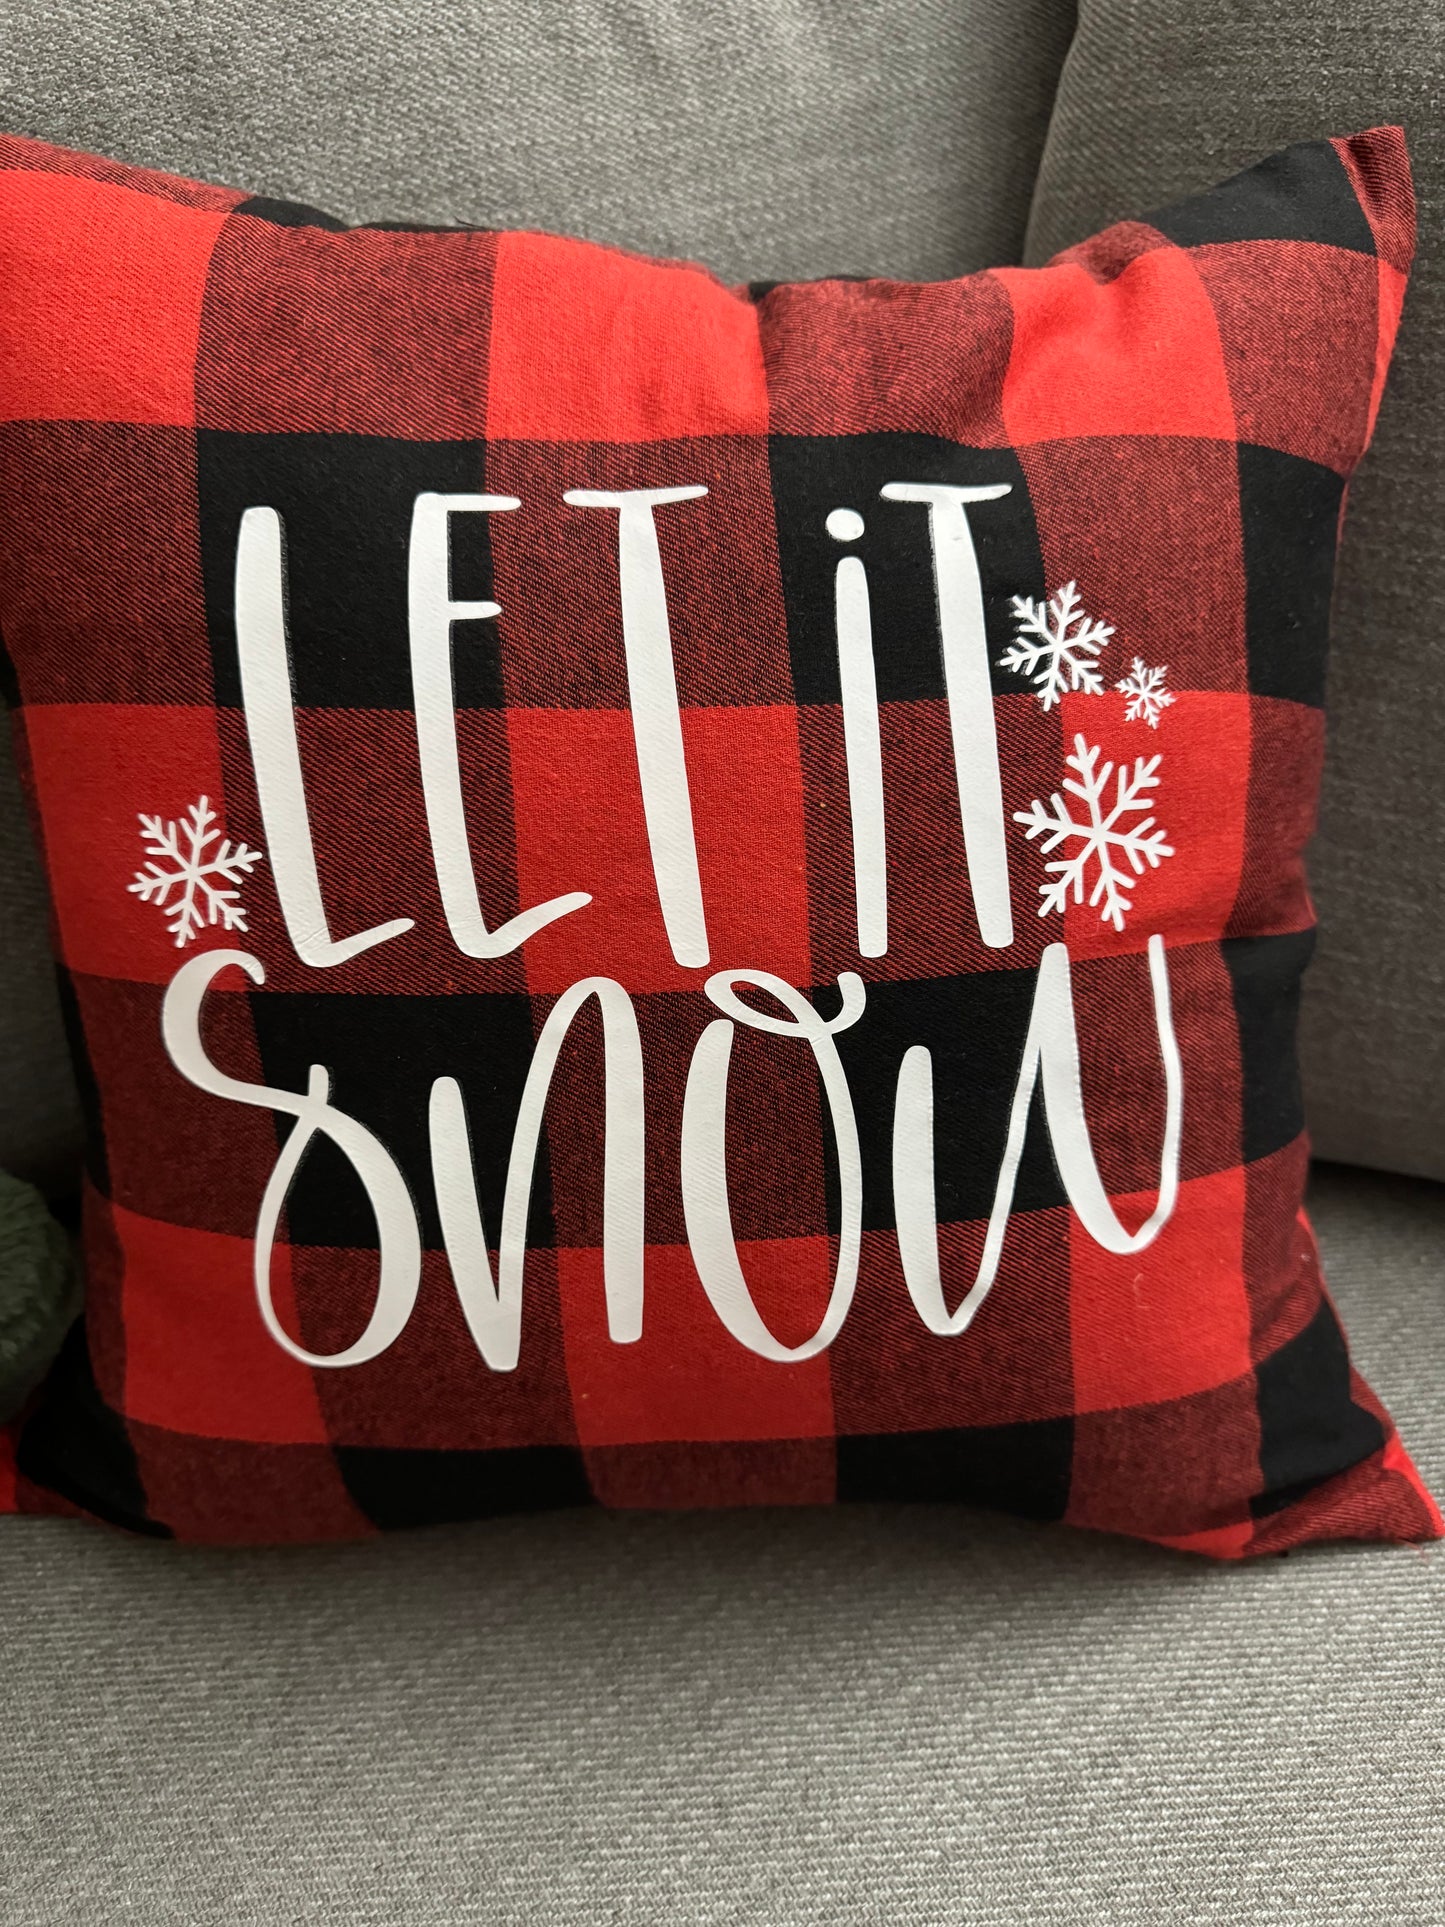 Let it Snow Pillow Case